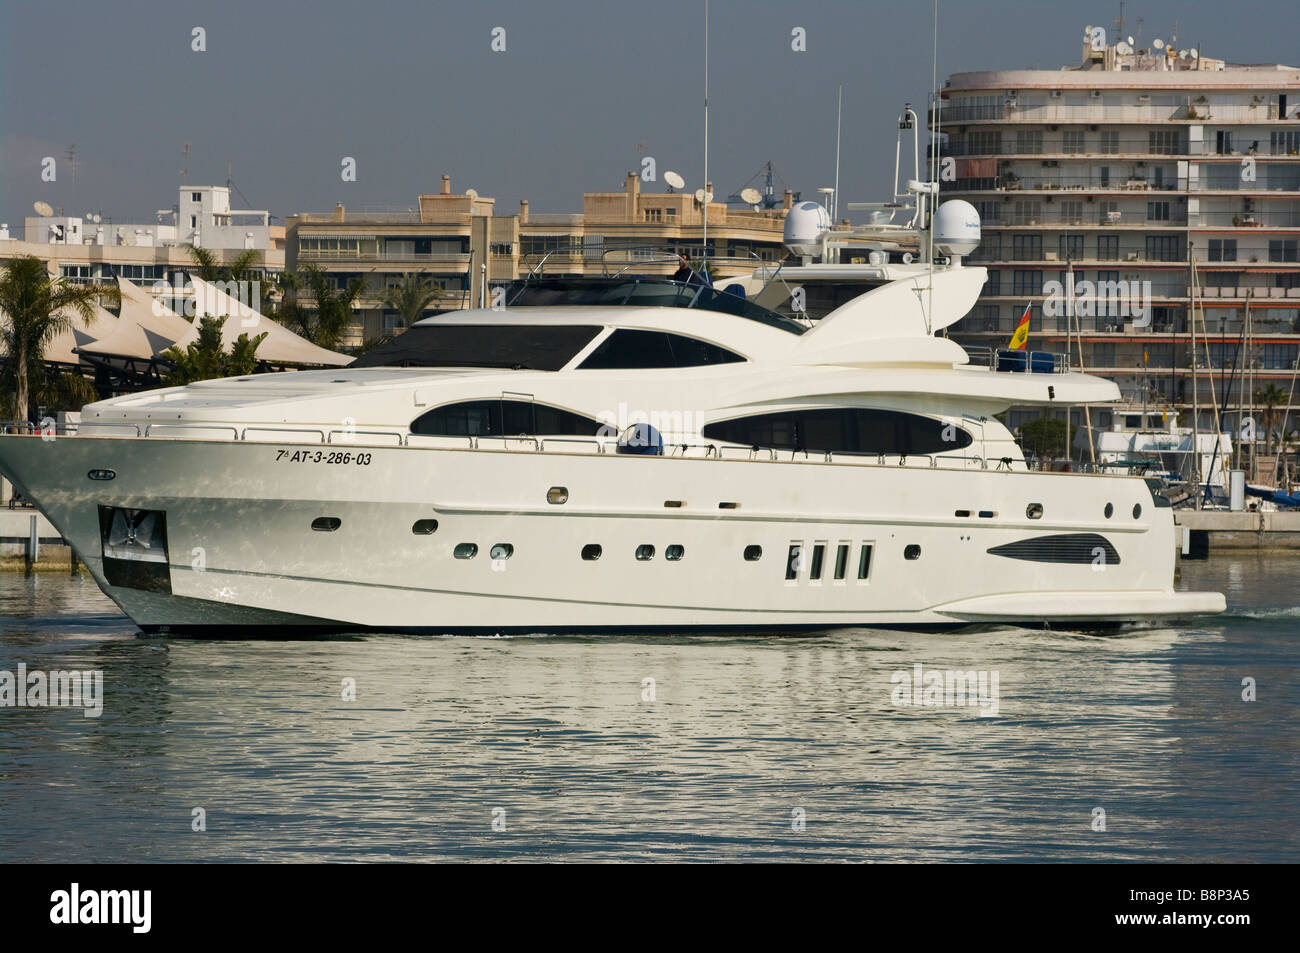 Cher grand luxe Motor Cruiser Location de bateau dans le port de Santa Pola Espagne Banque D'Images